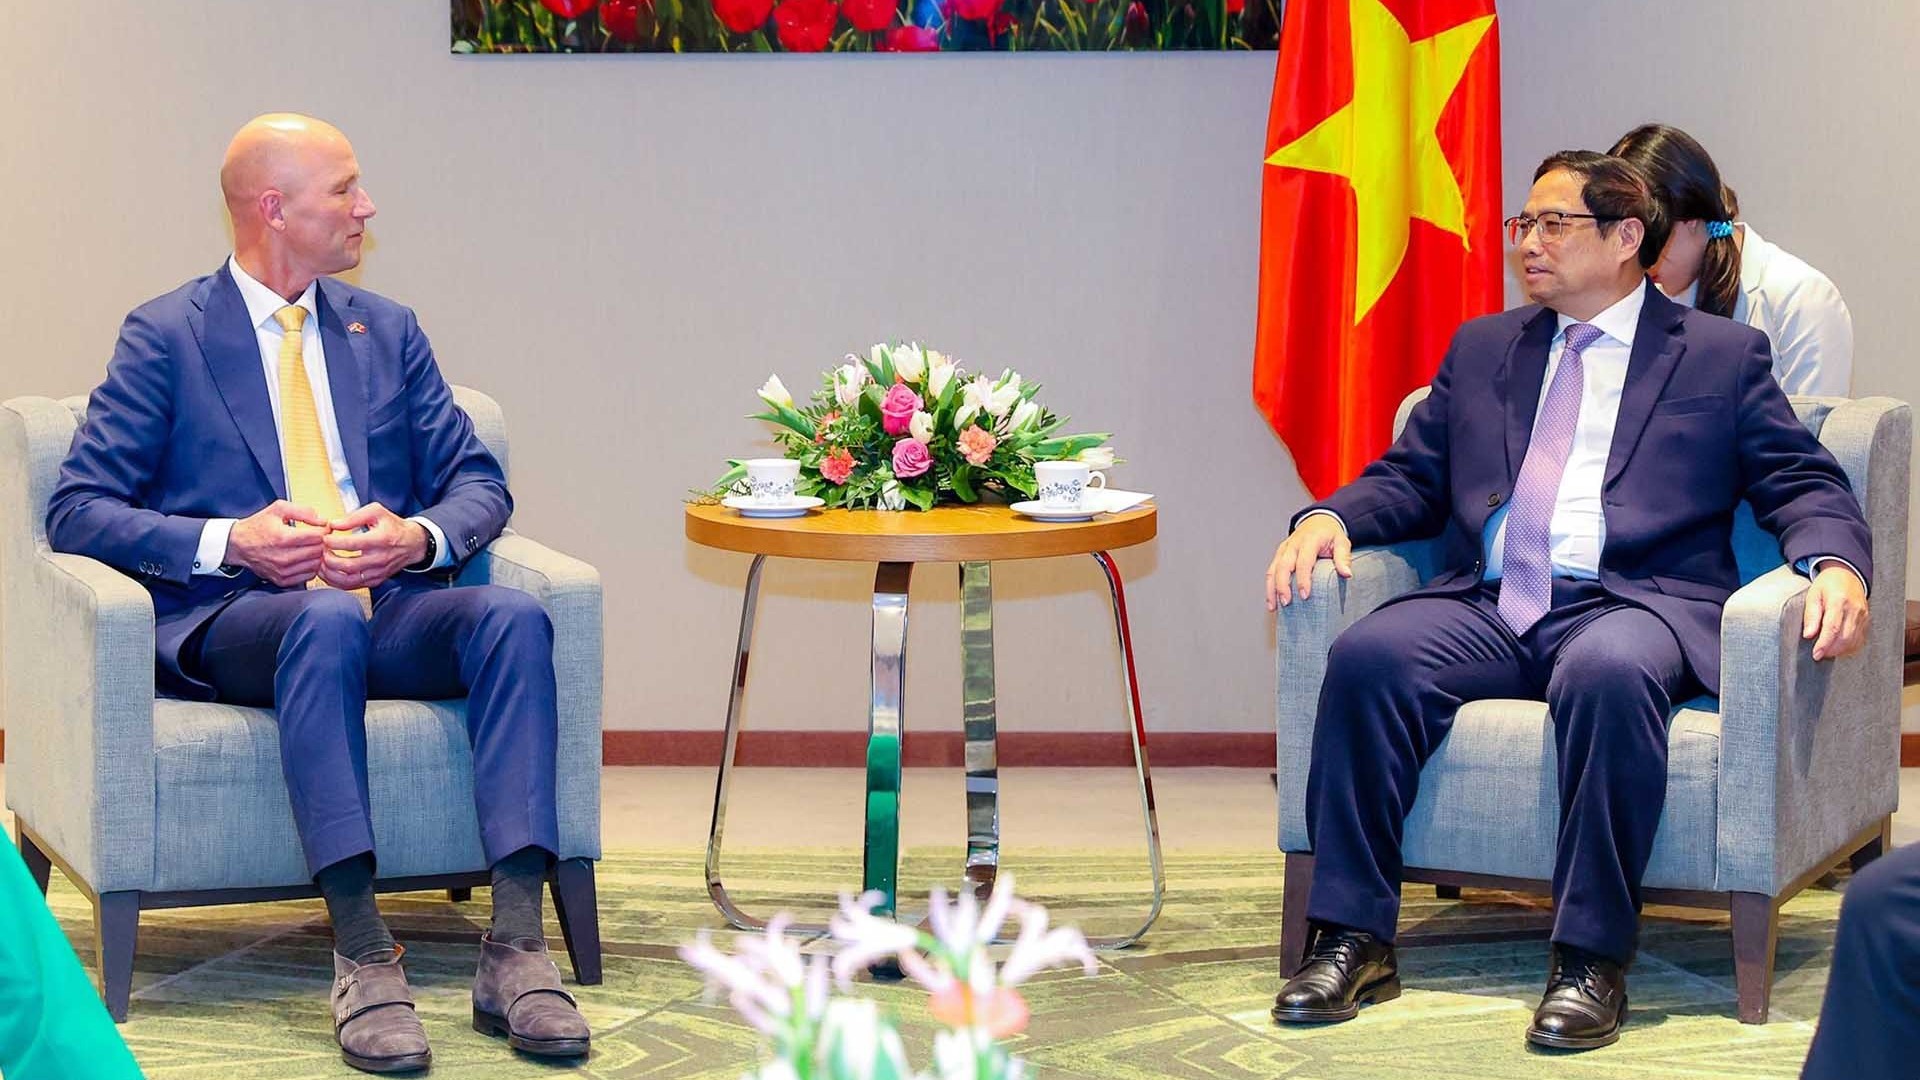 Thúc đẩy các doanh nghiệp Hà Lan đầu tư tại Việt Nam